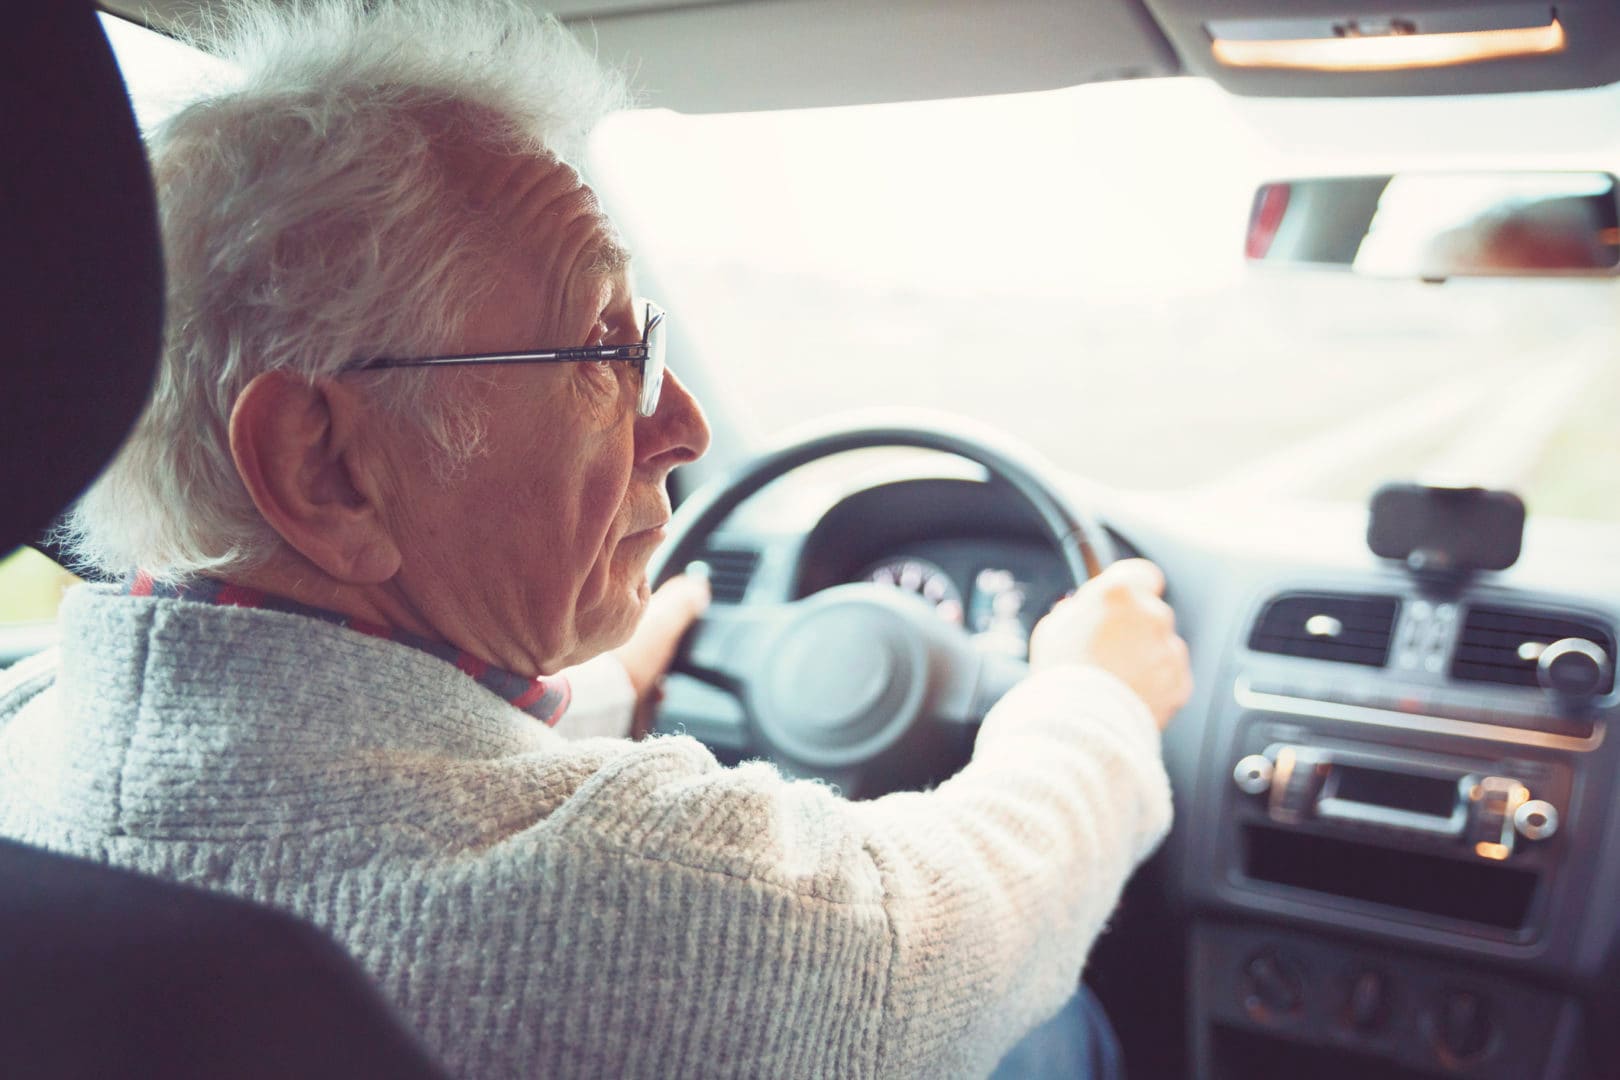 Senior driving safety: 9 warning signs a senior shouldn't be driving